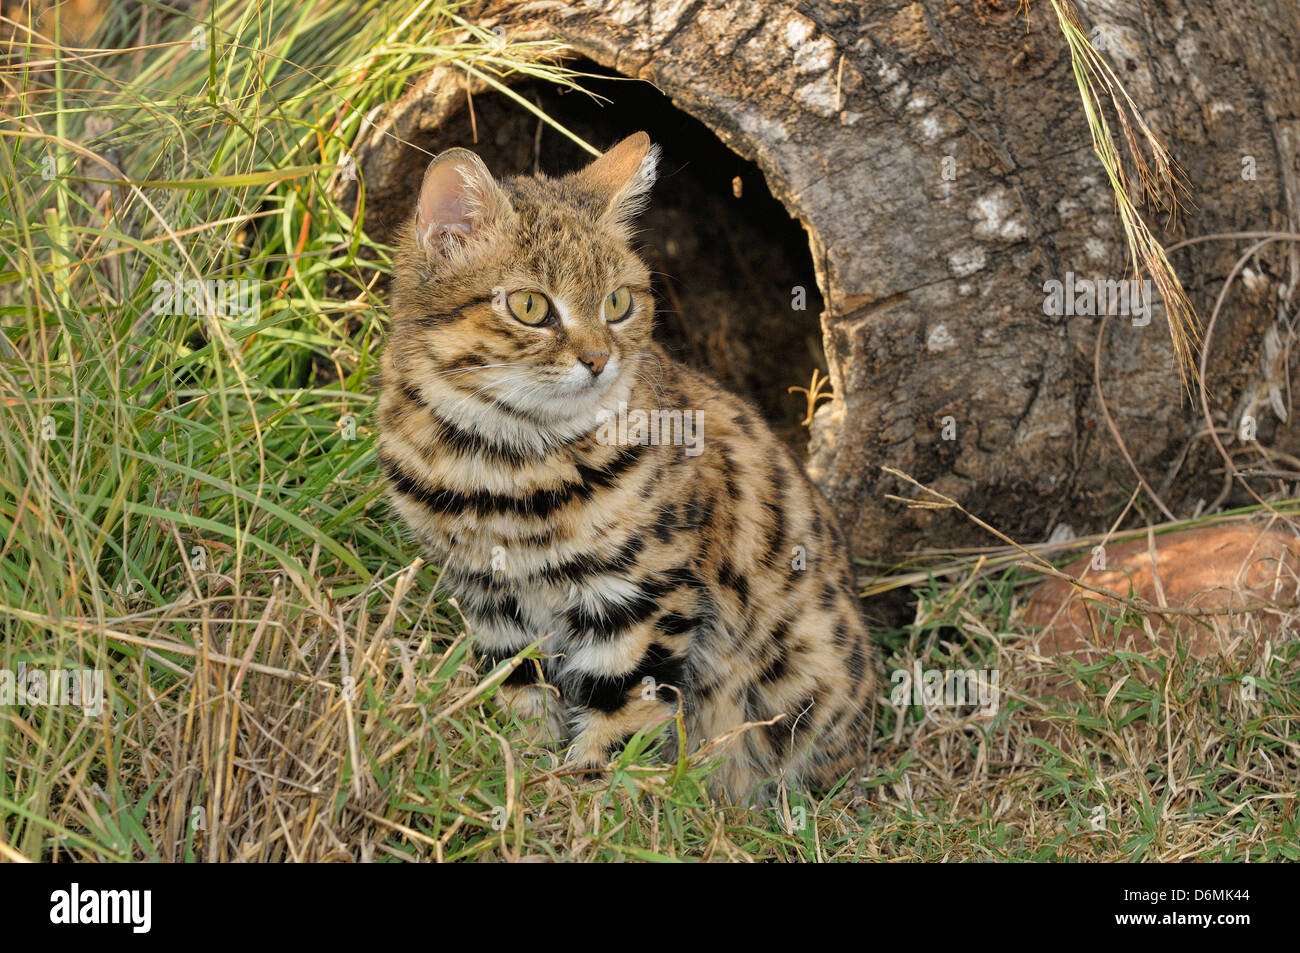 Patas negras Felis nigripes gato fotografiado en cautividad de especies en peligro de extinción en Sudáfrica Foto de stock